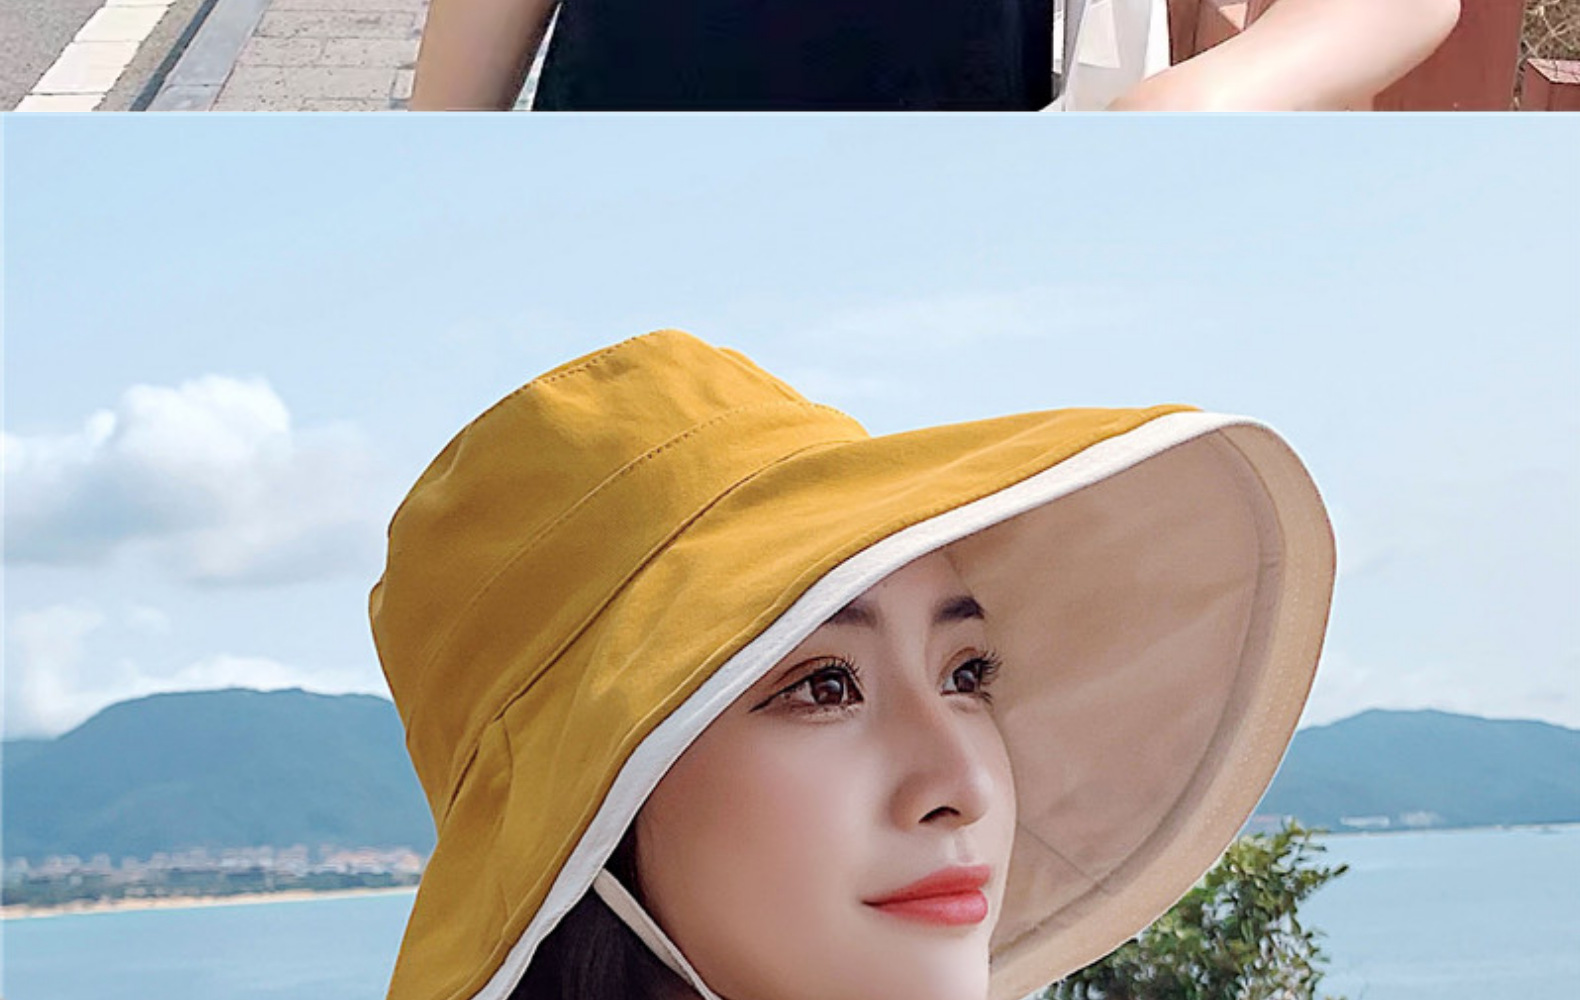 product小_奇妙_渔夫帽